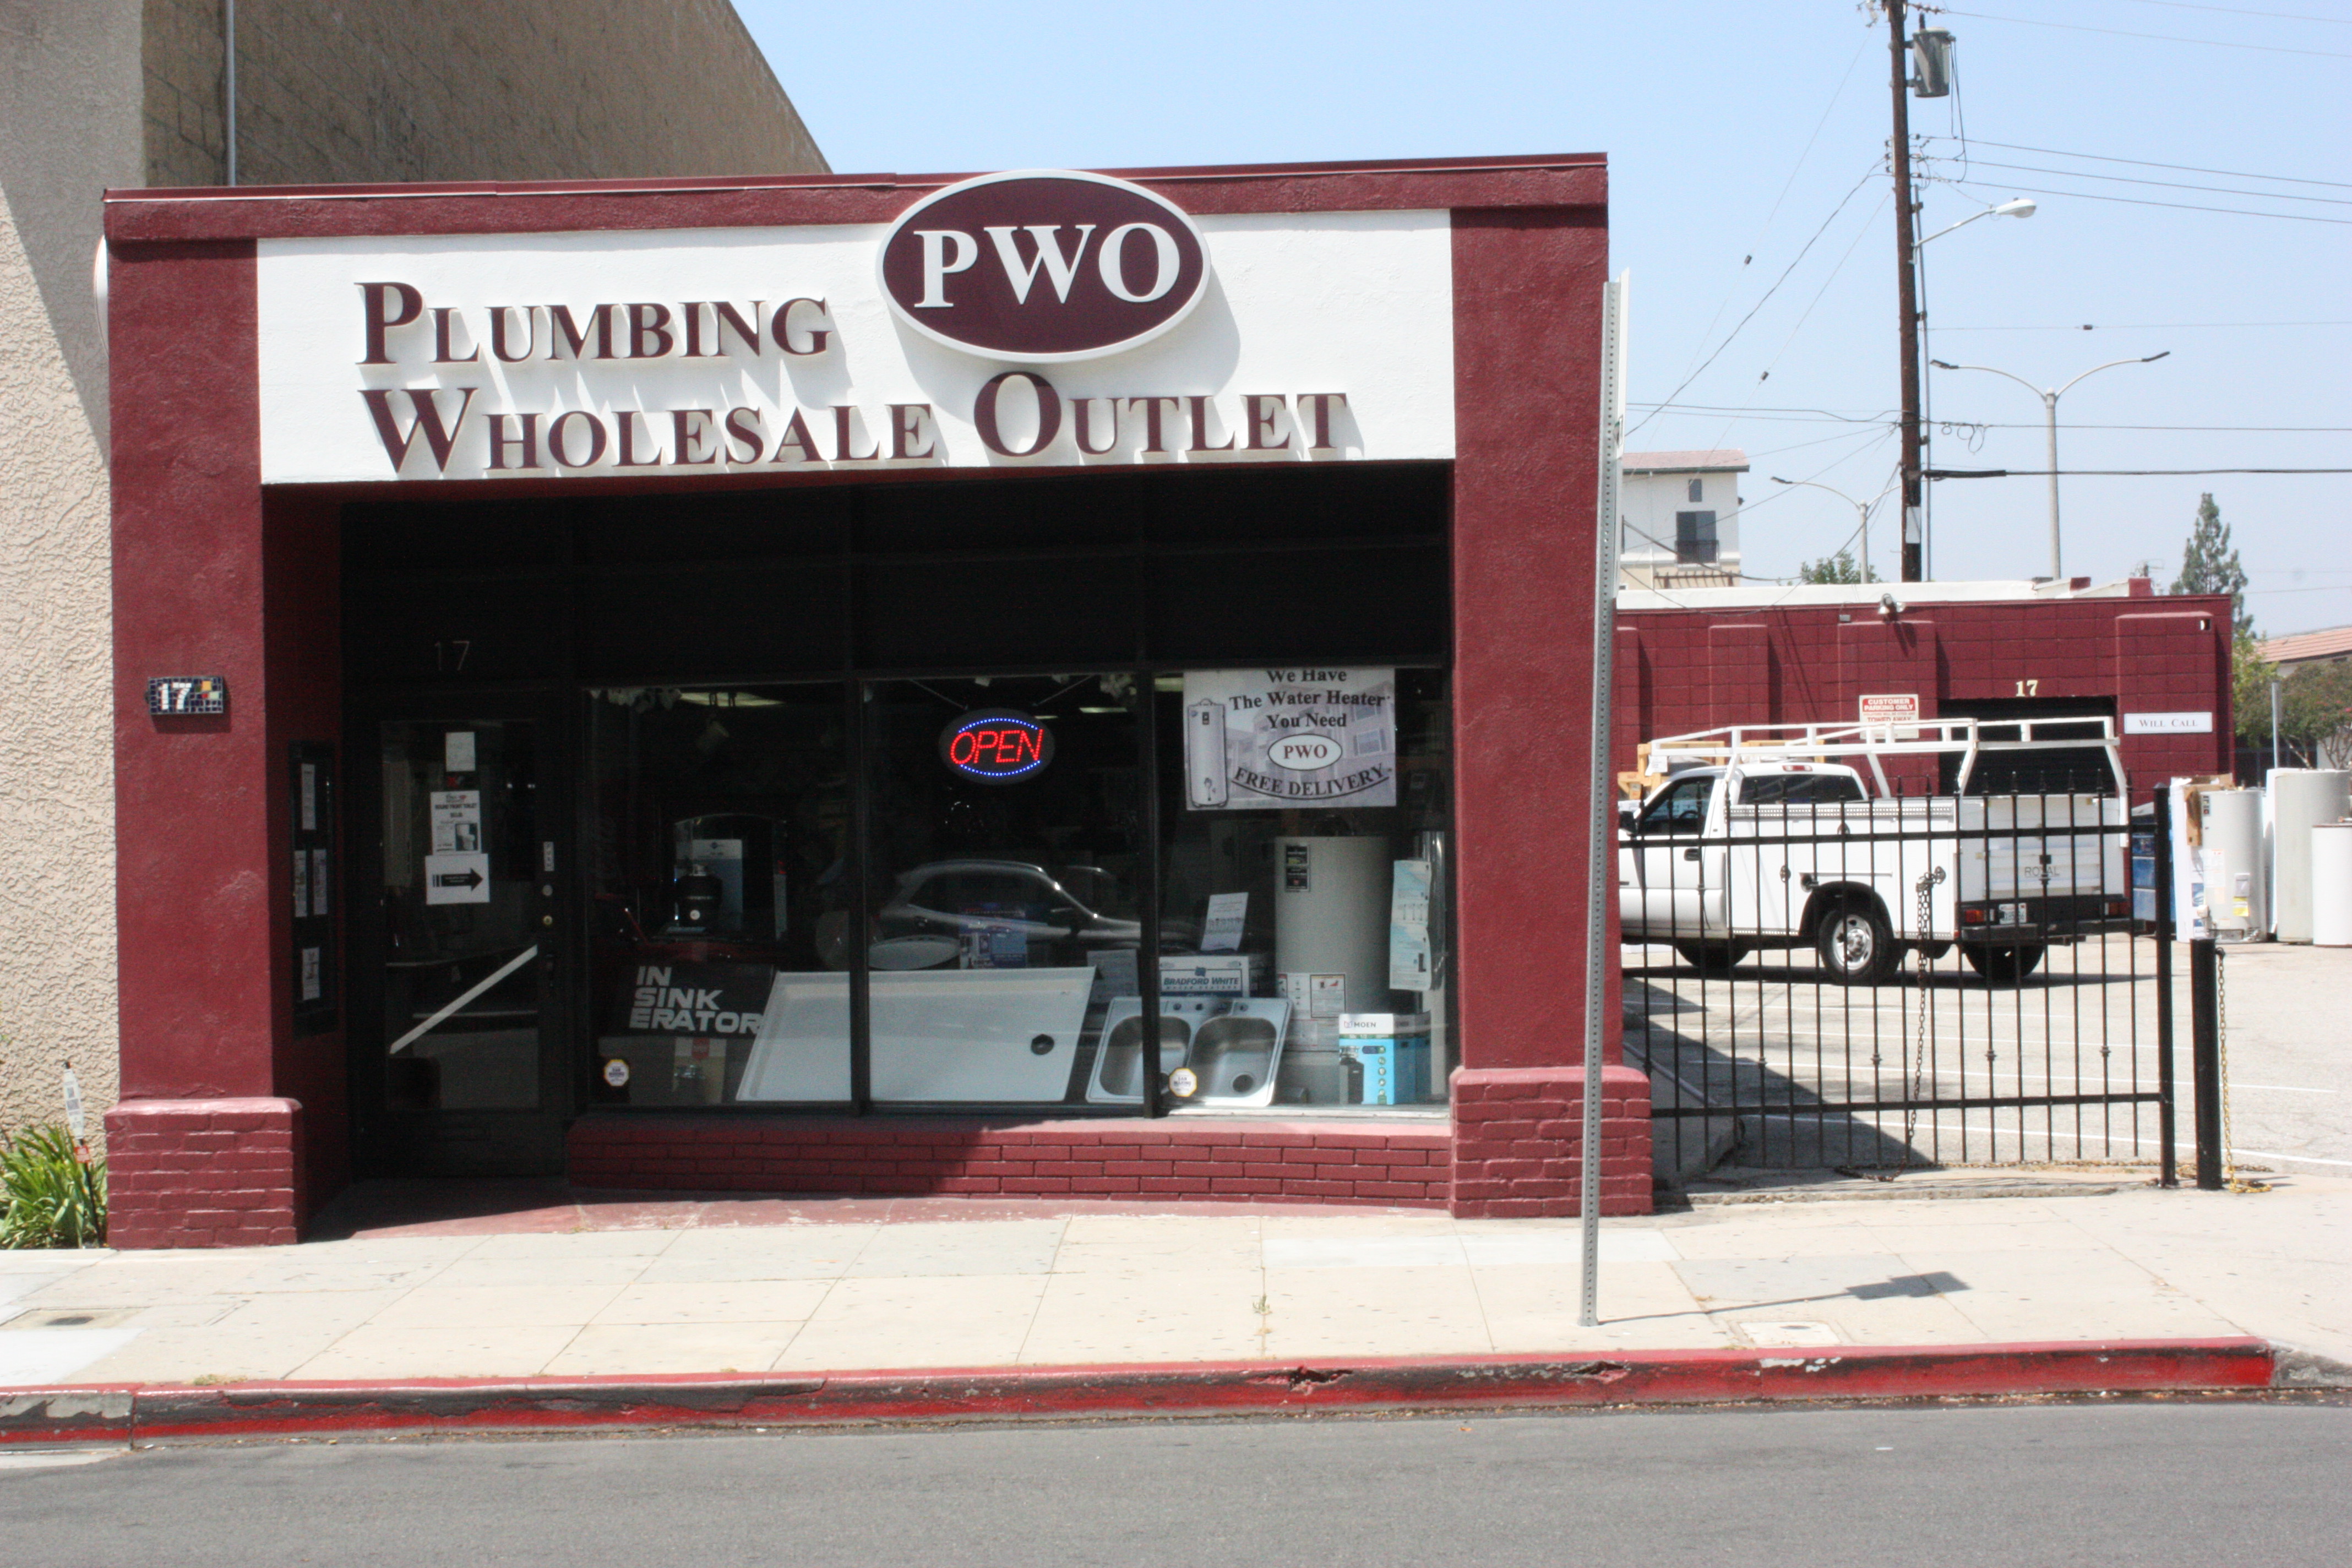 Plumbing Wholesale Outlet - Plumbing Wholesale Outlet